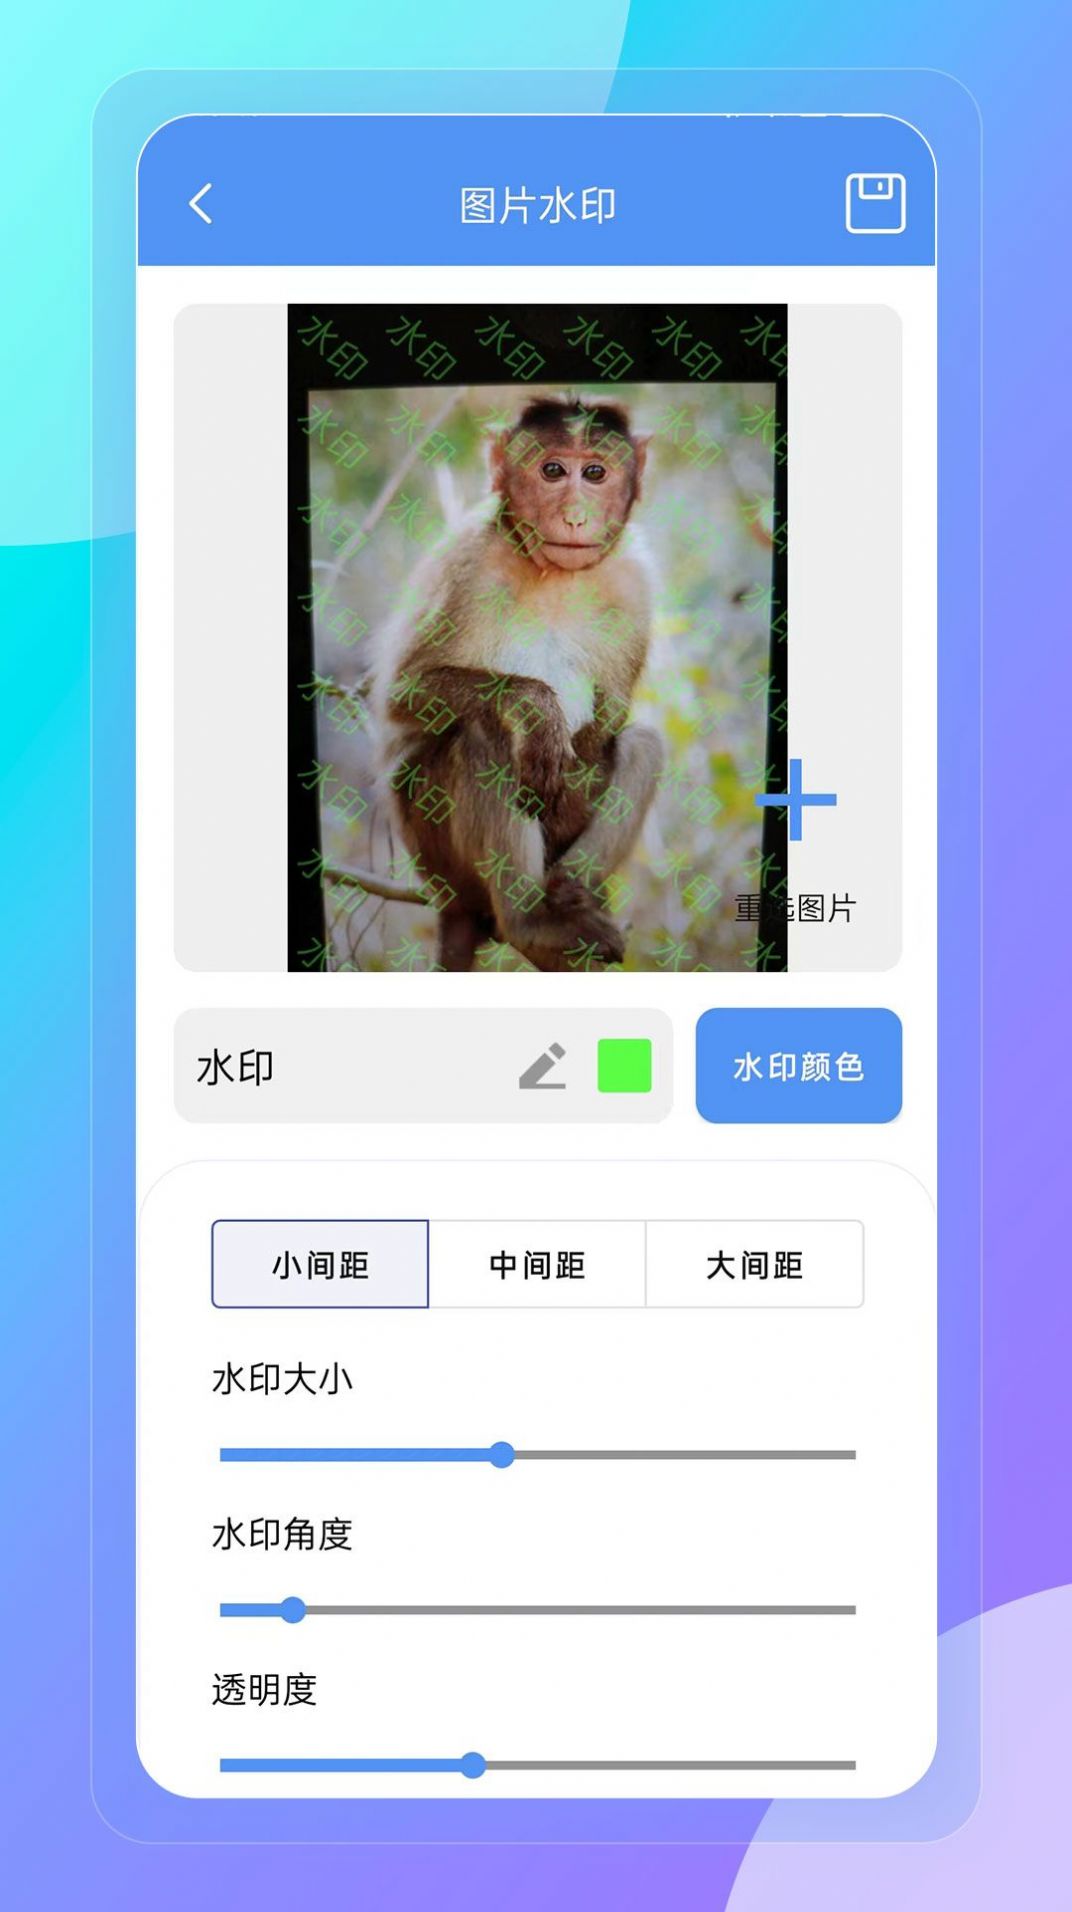 妙巧盒子app下载,妙巧盒子app安卓版 v1.0.0